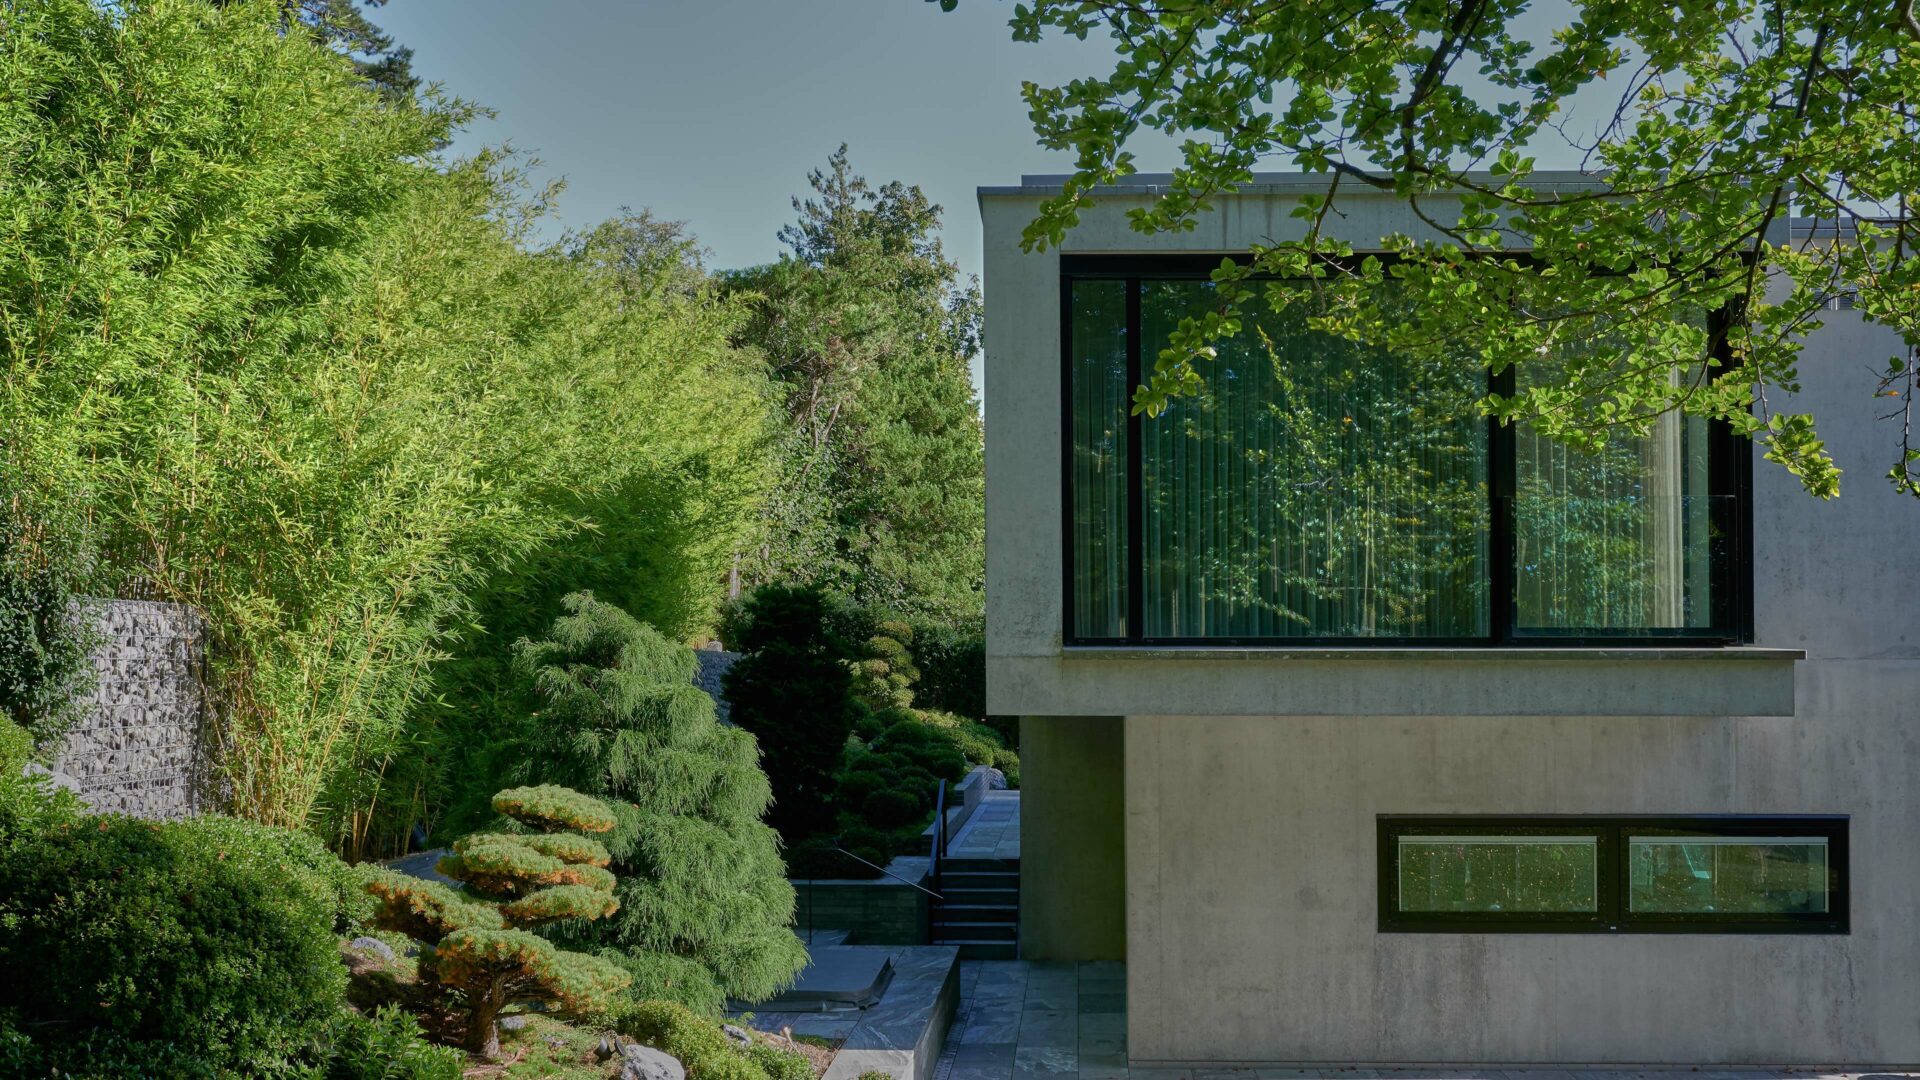 Architecture office, interior design - Daniel Huber architecture & design - Villa Kusenbach